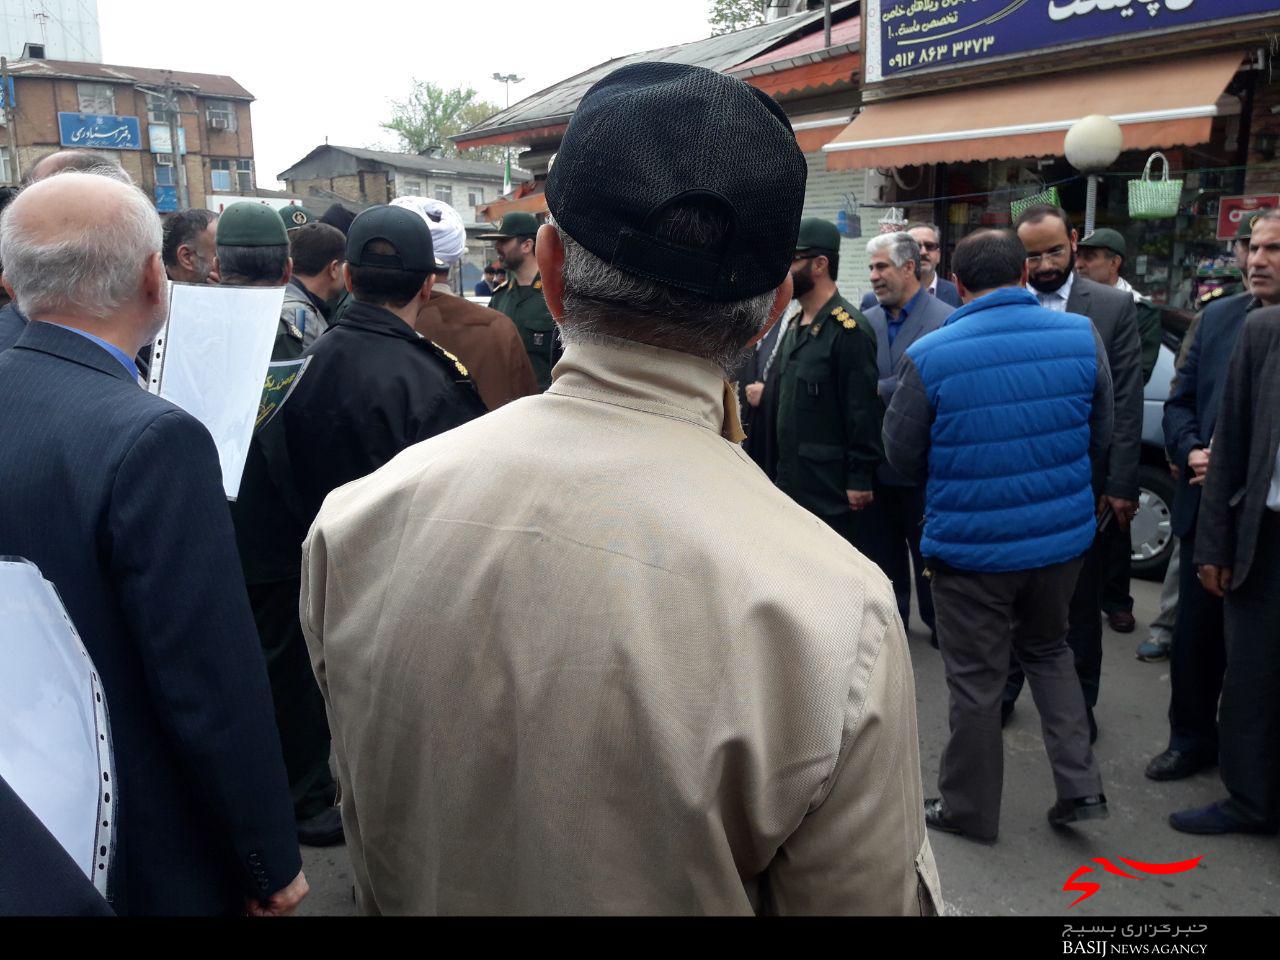 راهپیمایی مردم شفت جهت حمایت و همدلی با سپاه پاسداران انقلاب اسلامی و محکومیت اقدام خصمانه آمریکا + تصاویر